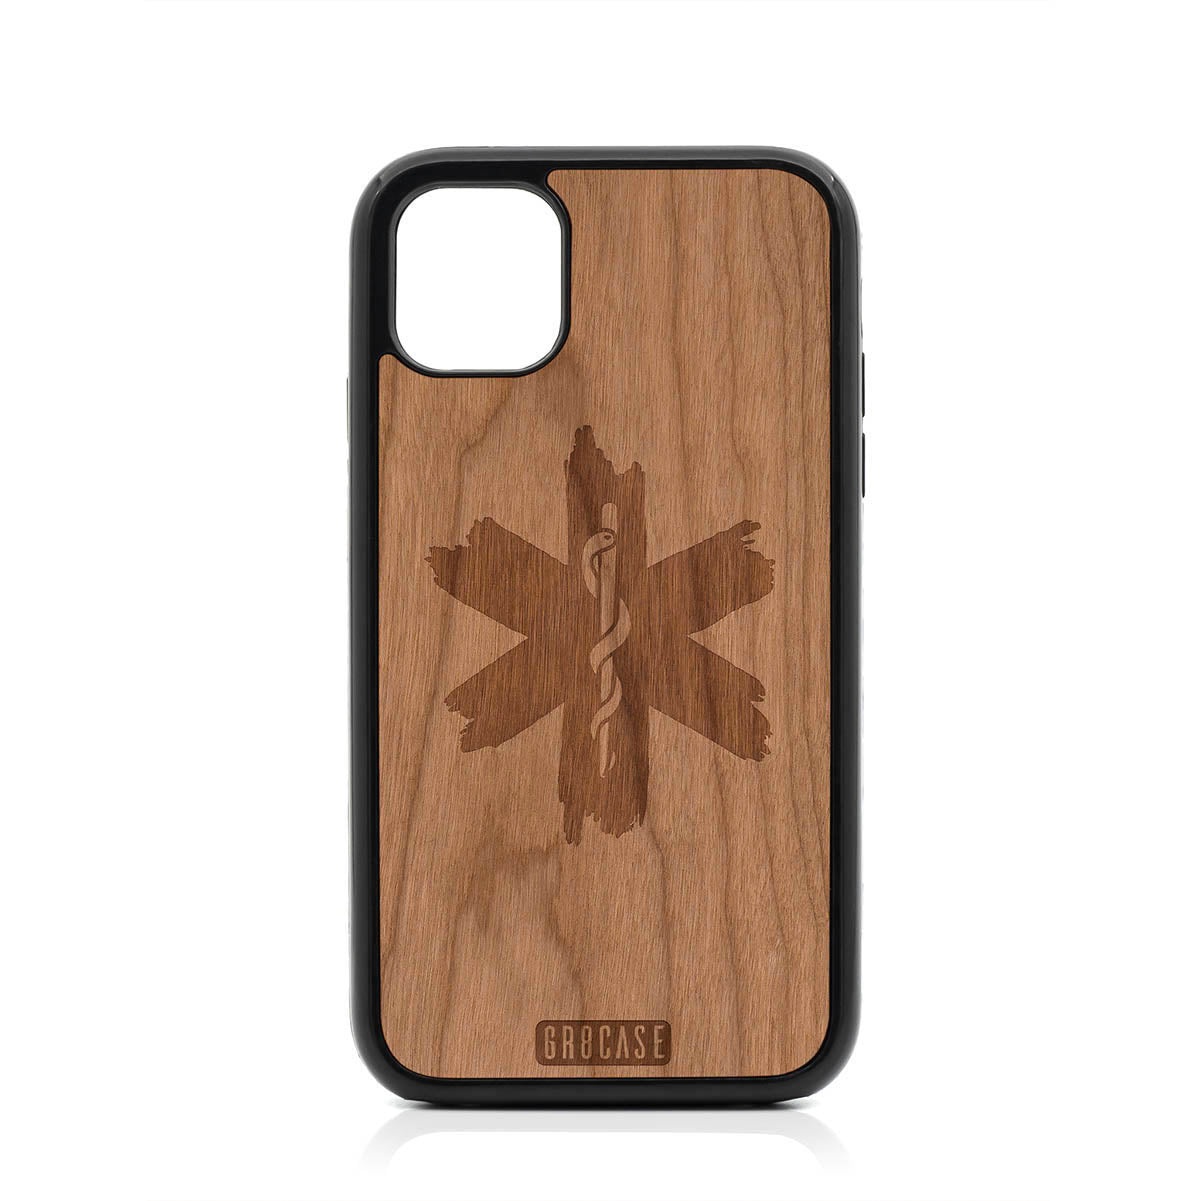 EMT Design Wood Case For iPhone 11 by GR8CASE